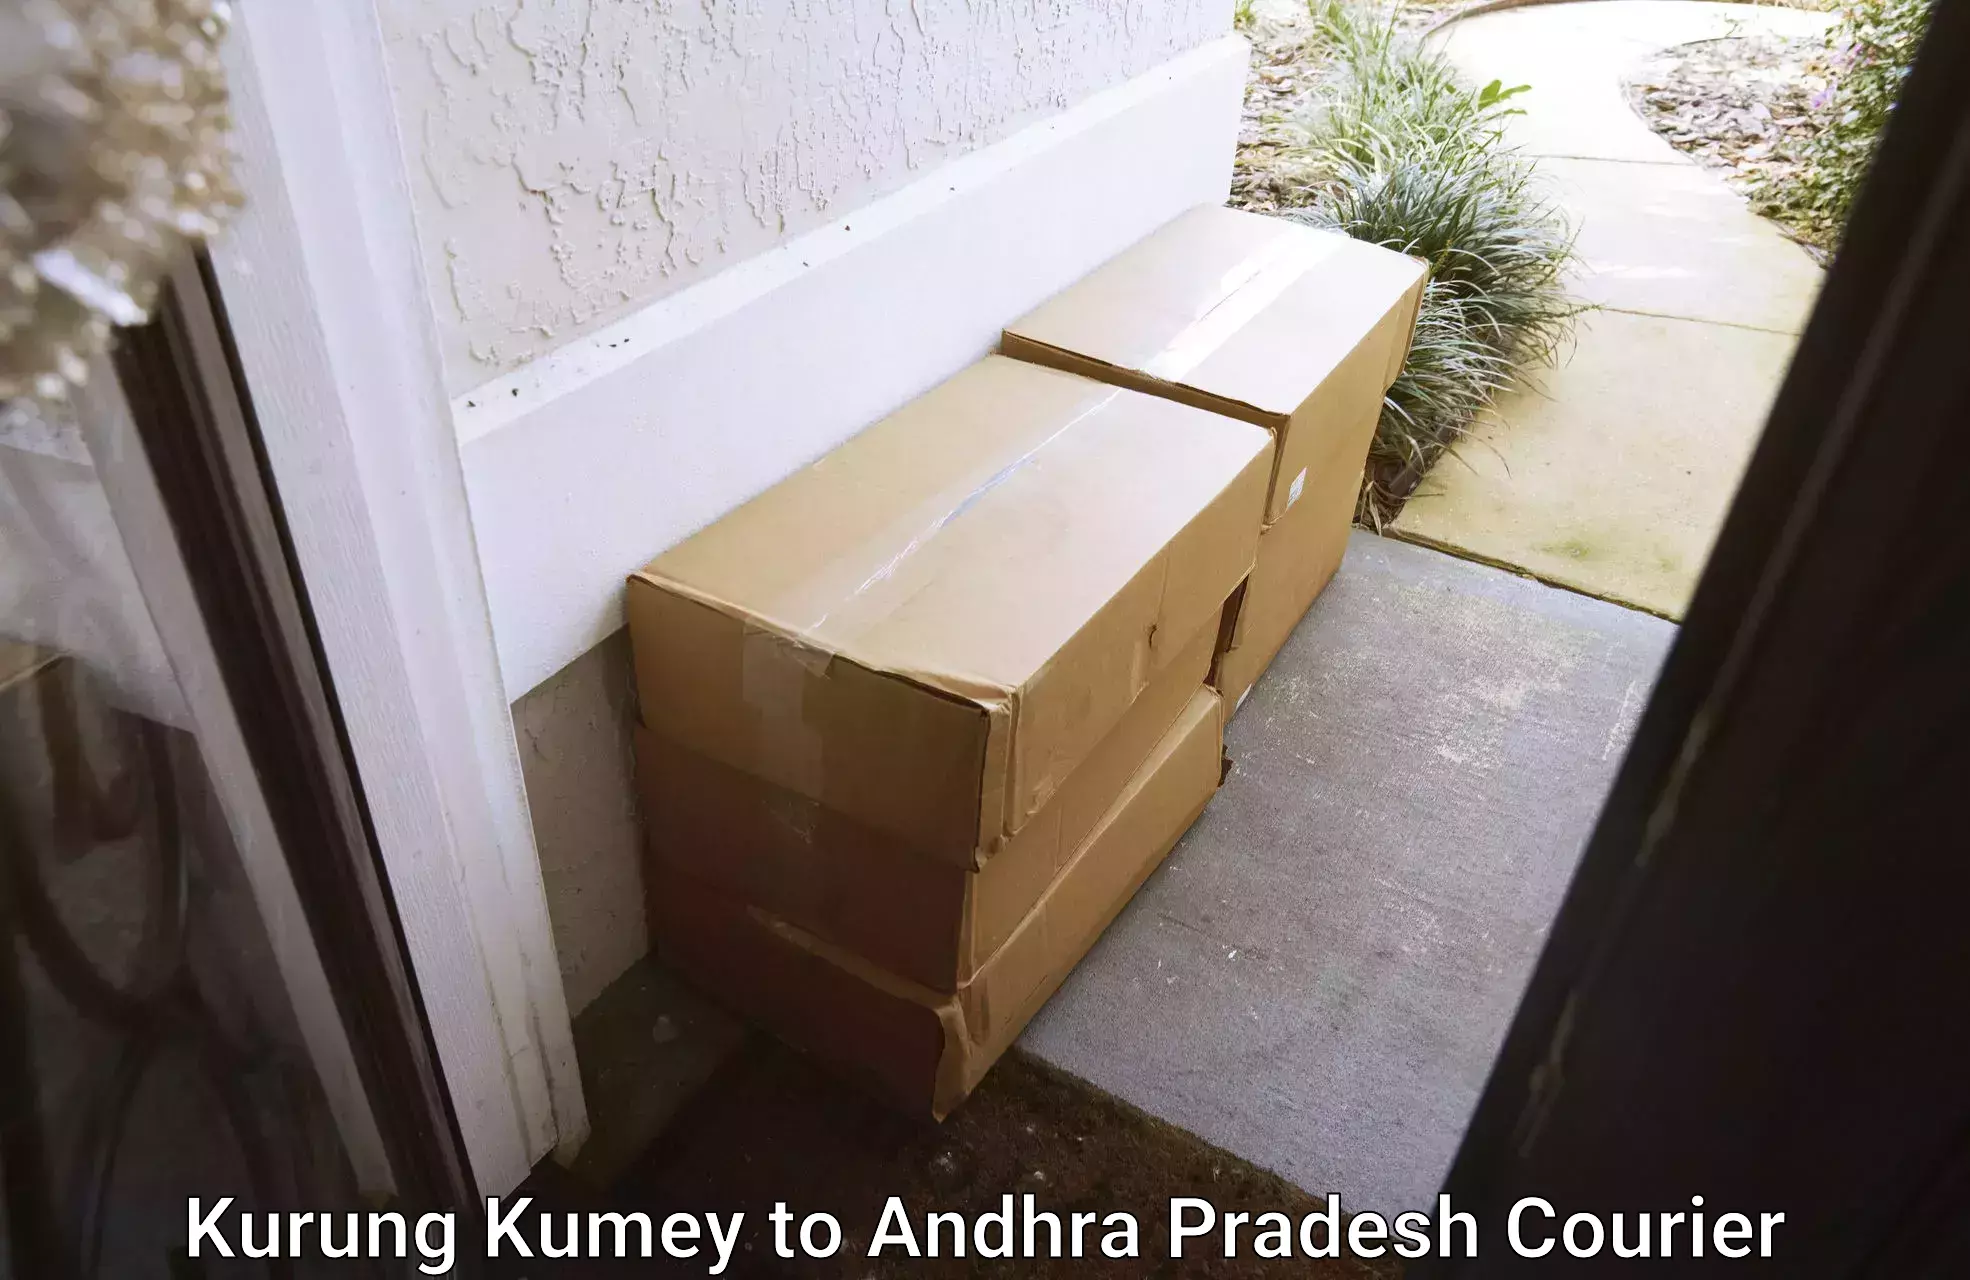 Courier service partnerships Kurung Kumey to Andhra Pradesh